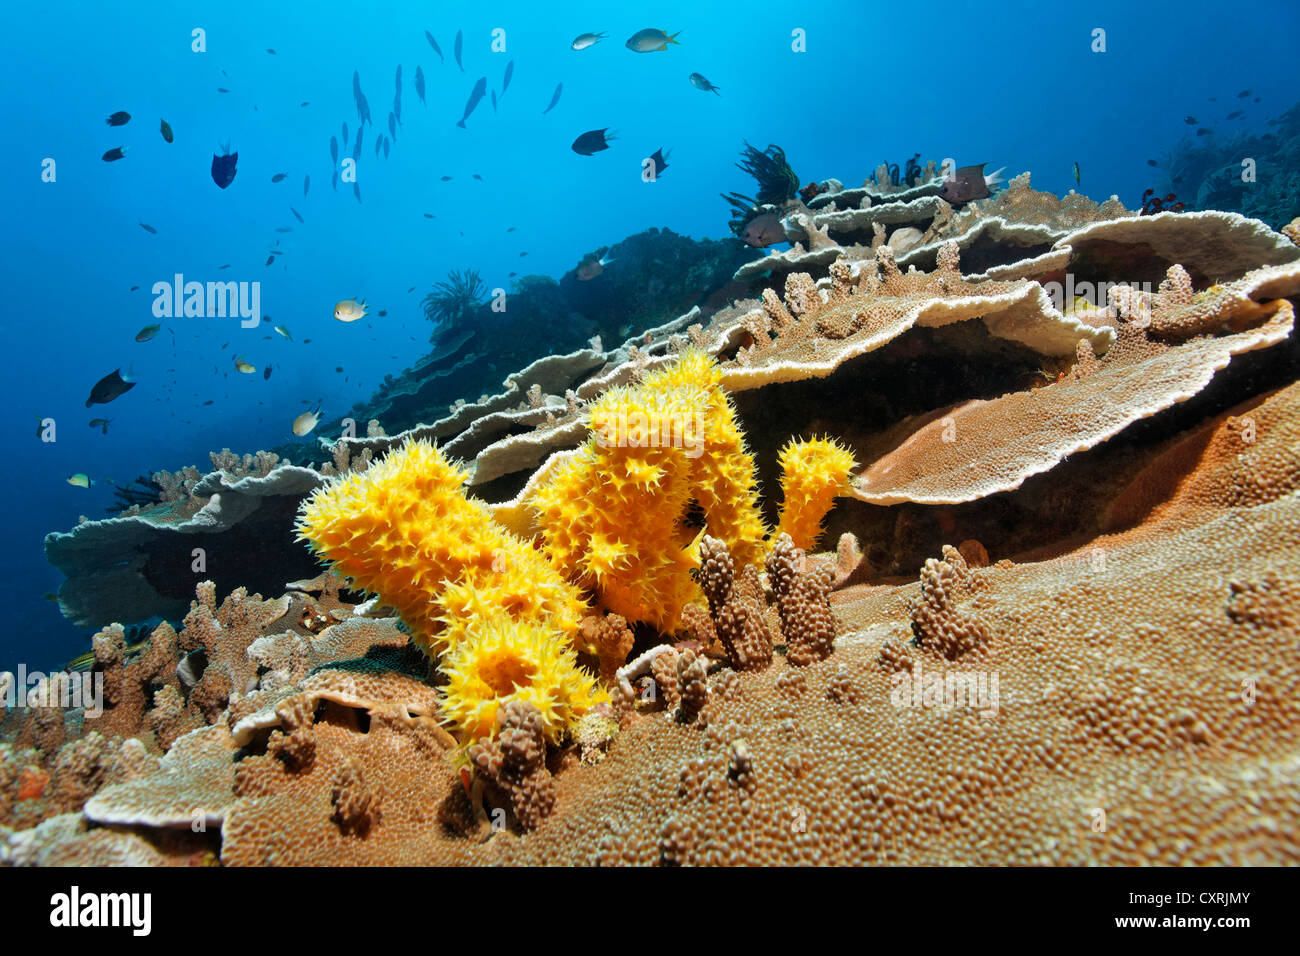 Paisaje submarino de coral esponja amarilla no identificados (Porifera), corales y peces de piedra, la Gran Barrera de Coral Foto de stock